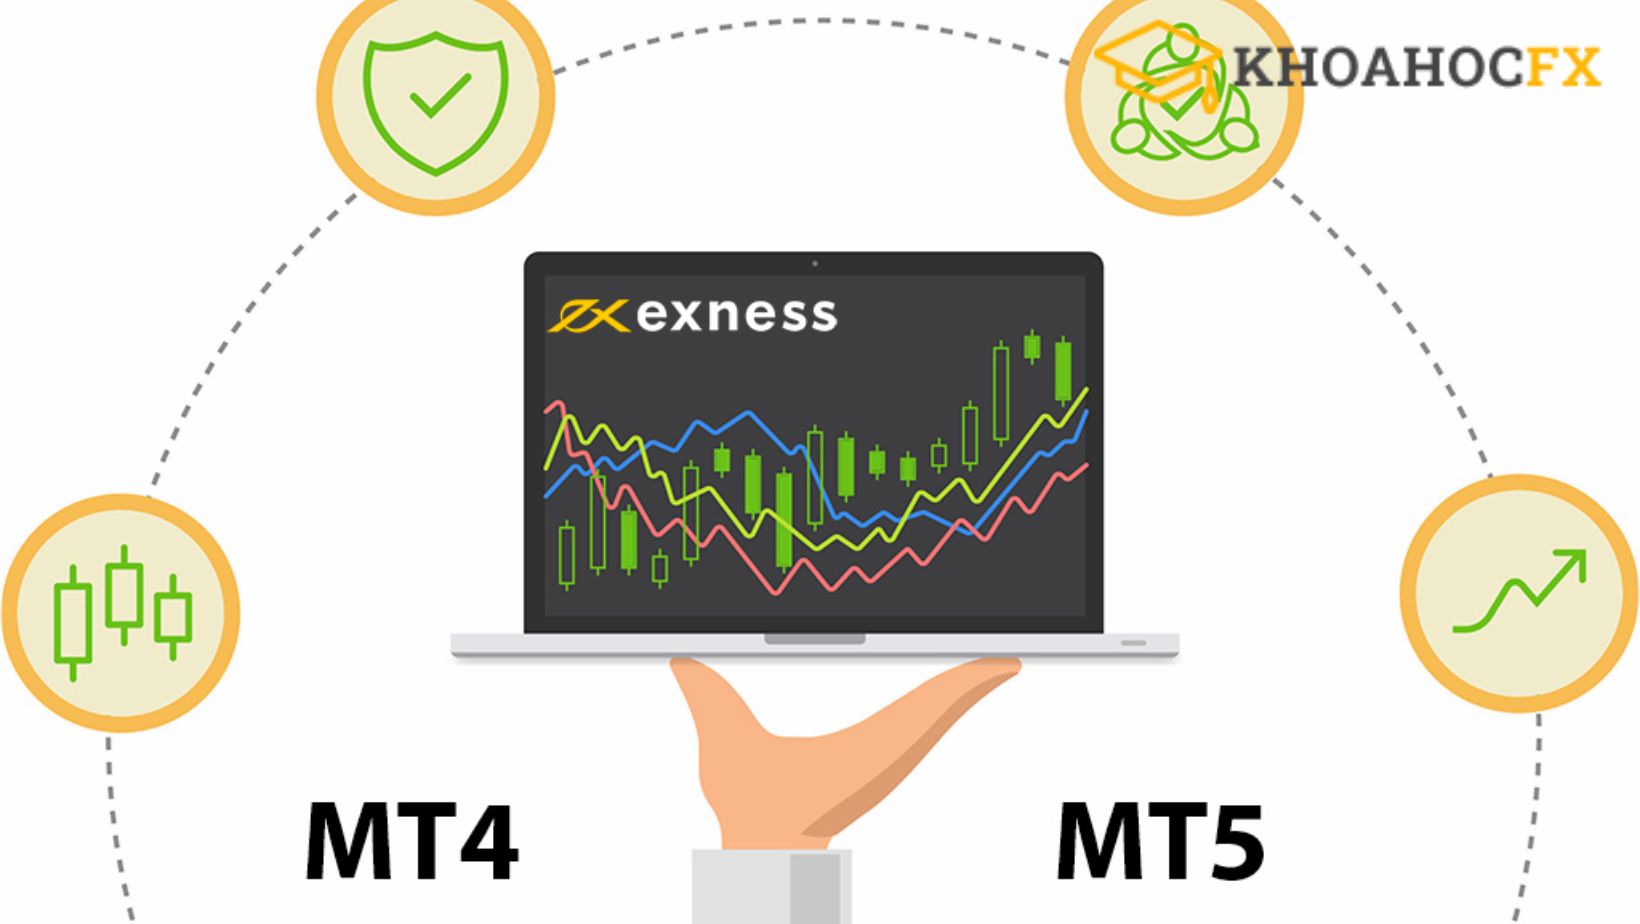 Tính năng nổi bật của Exness MT5 so với MT4